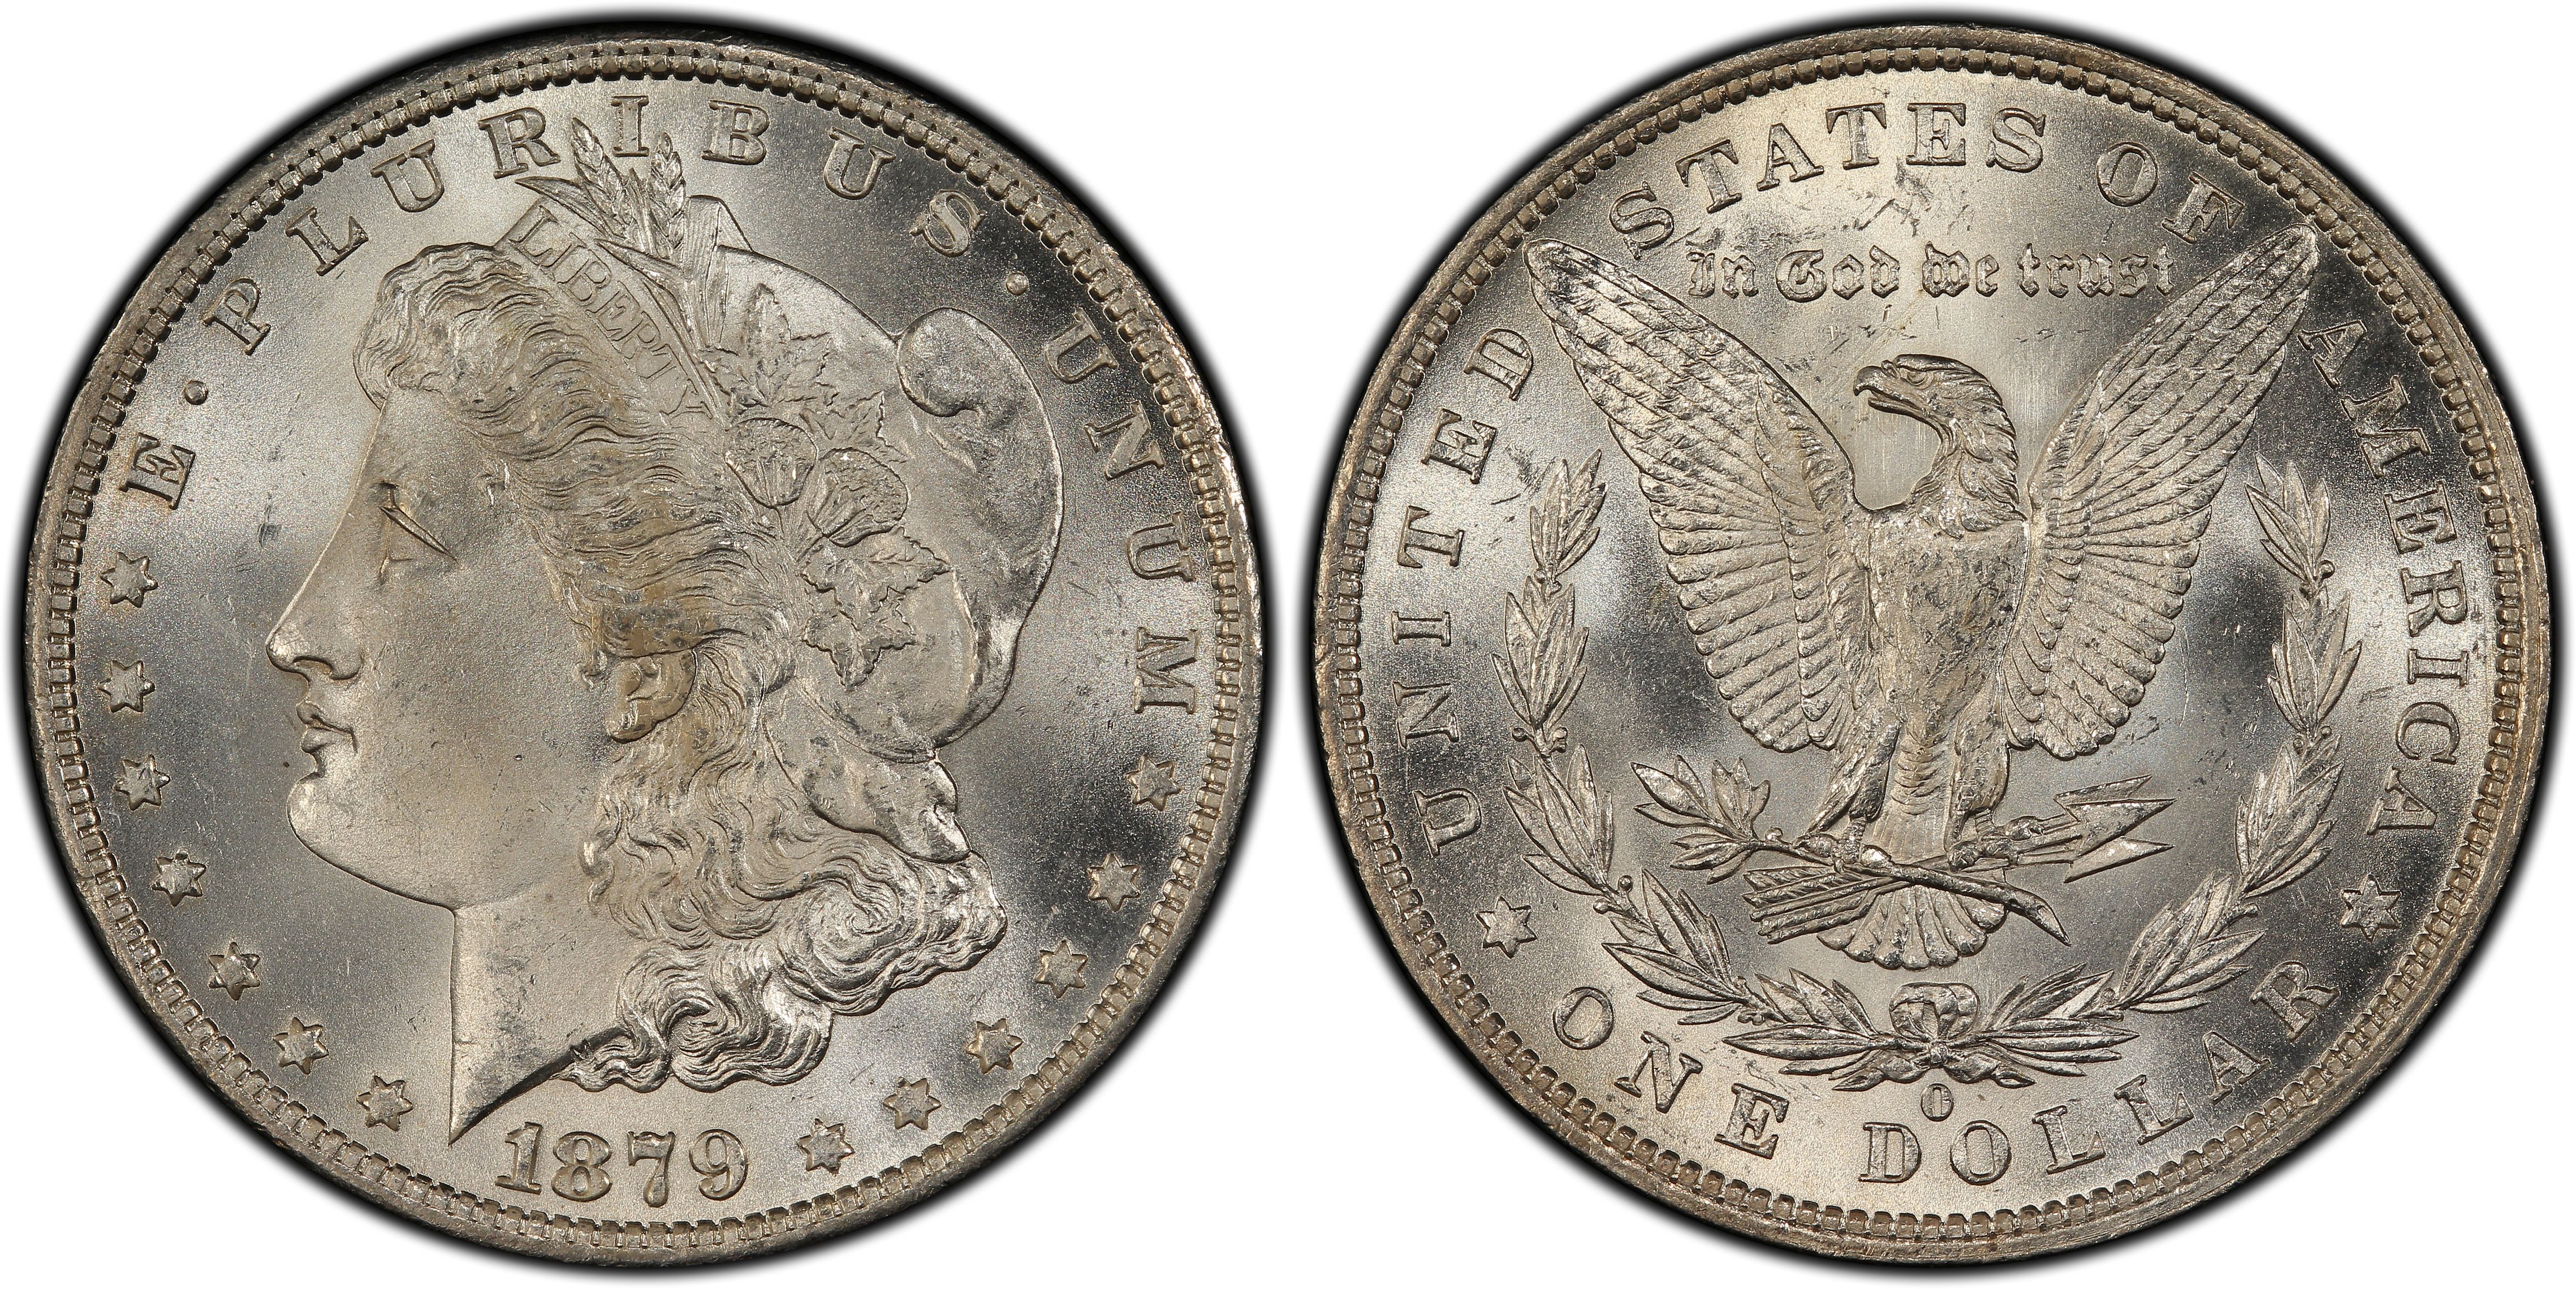 1878 7TF $1 R79 VAM 224 - 168 Reeds (Regular Strike) Morgan Dollar